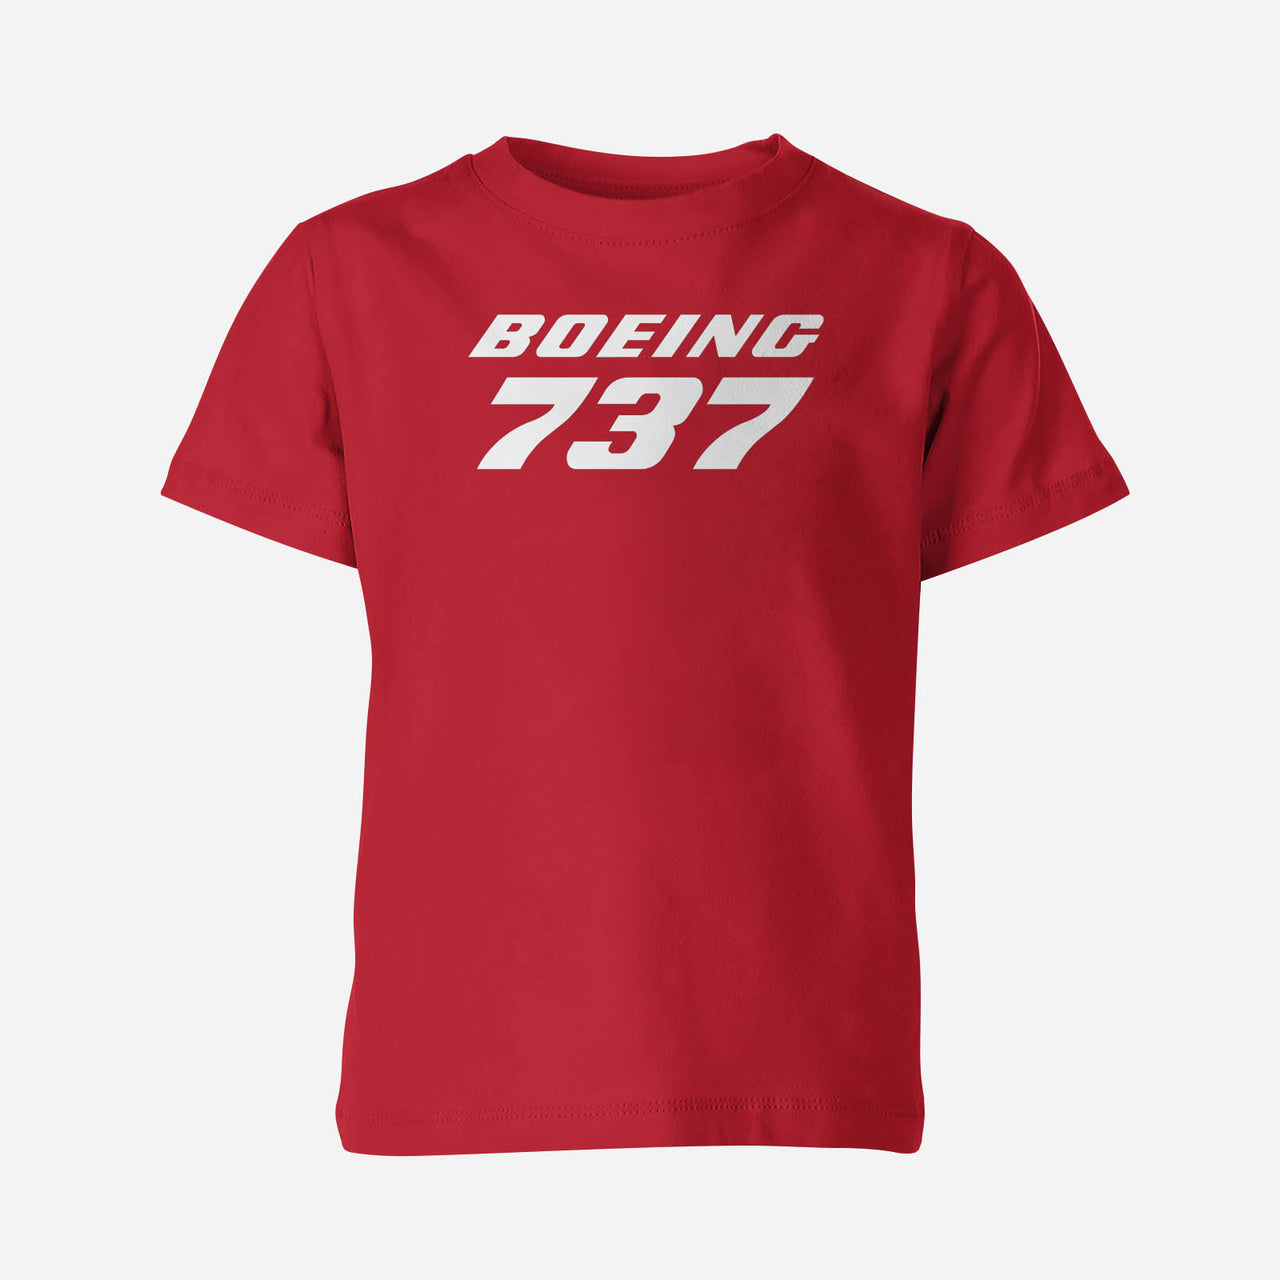 Boeing 737 & Text Designed Children T-Shirts